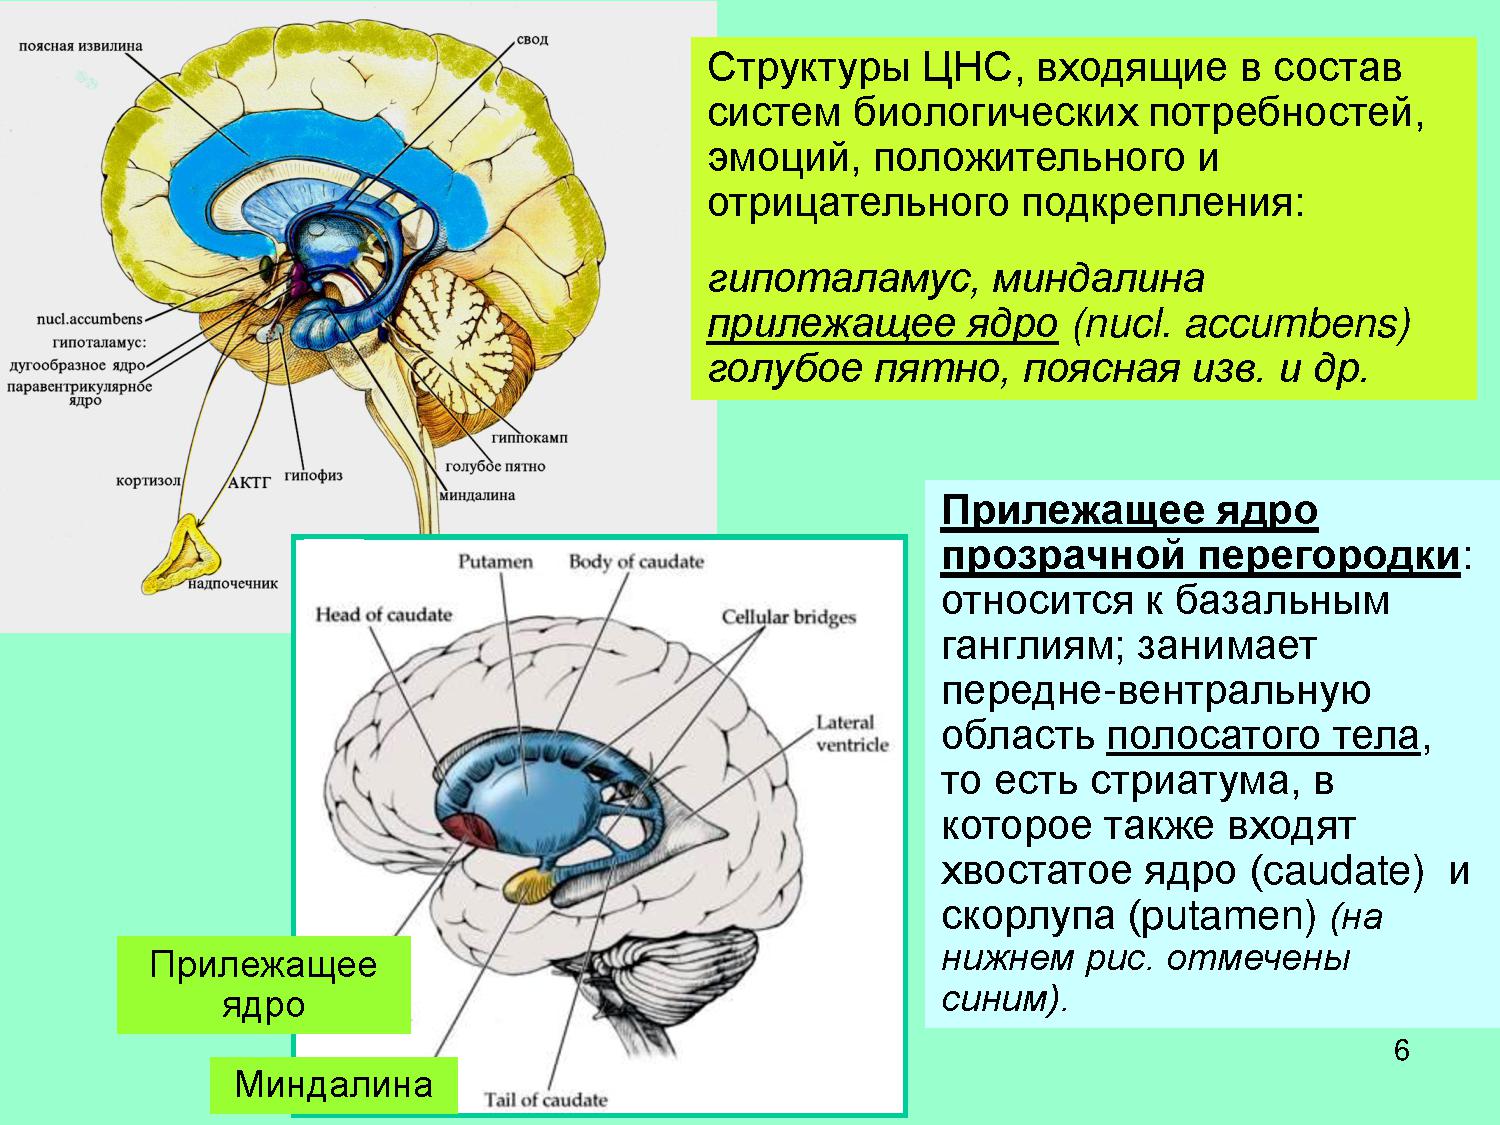 Самое стабильное ядро. Прилежащее ядро головного мозга. Прилежащее ядро прозрачной перегородки. Хвостатое ядро мозга строение. Функции хвостатого ядра головного мозга.